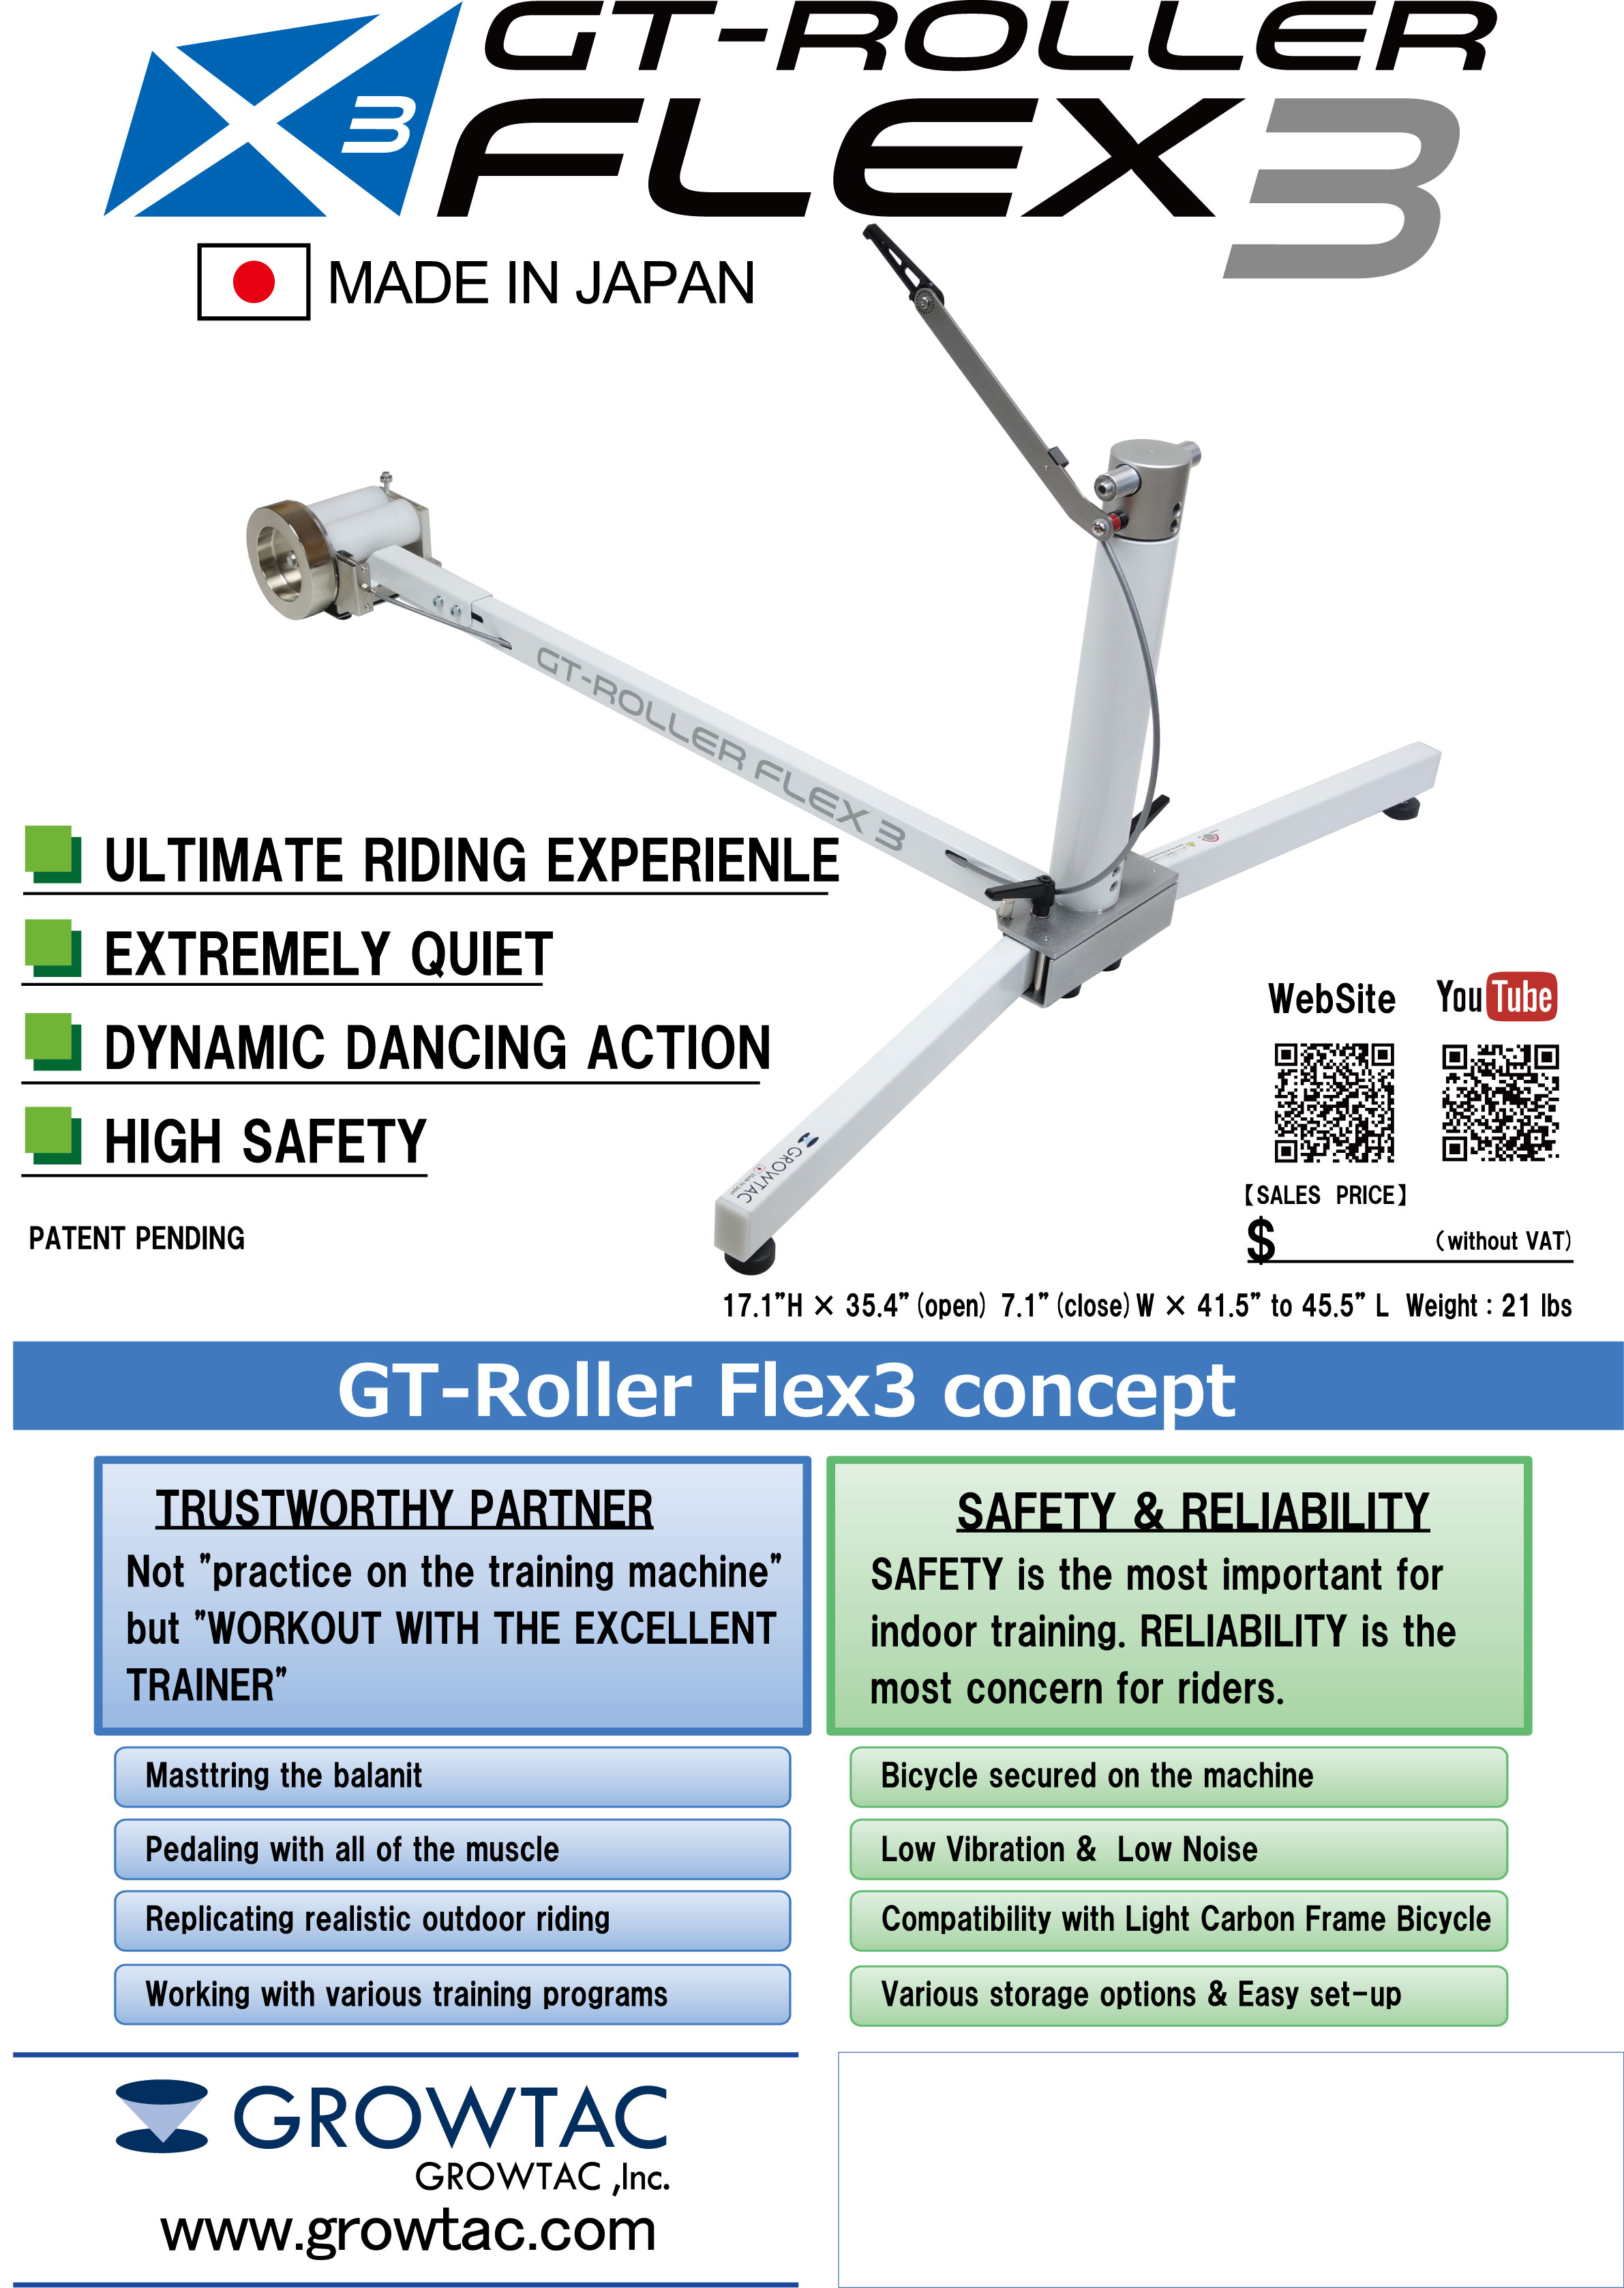 保障できる グロータック GROWTAC GT-ROLLER FLEX3 - アクセサリー - alrc.asia